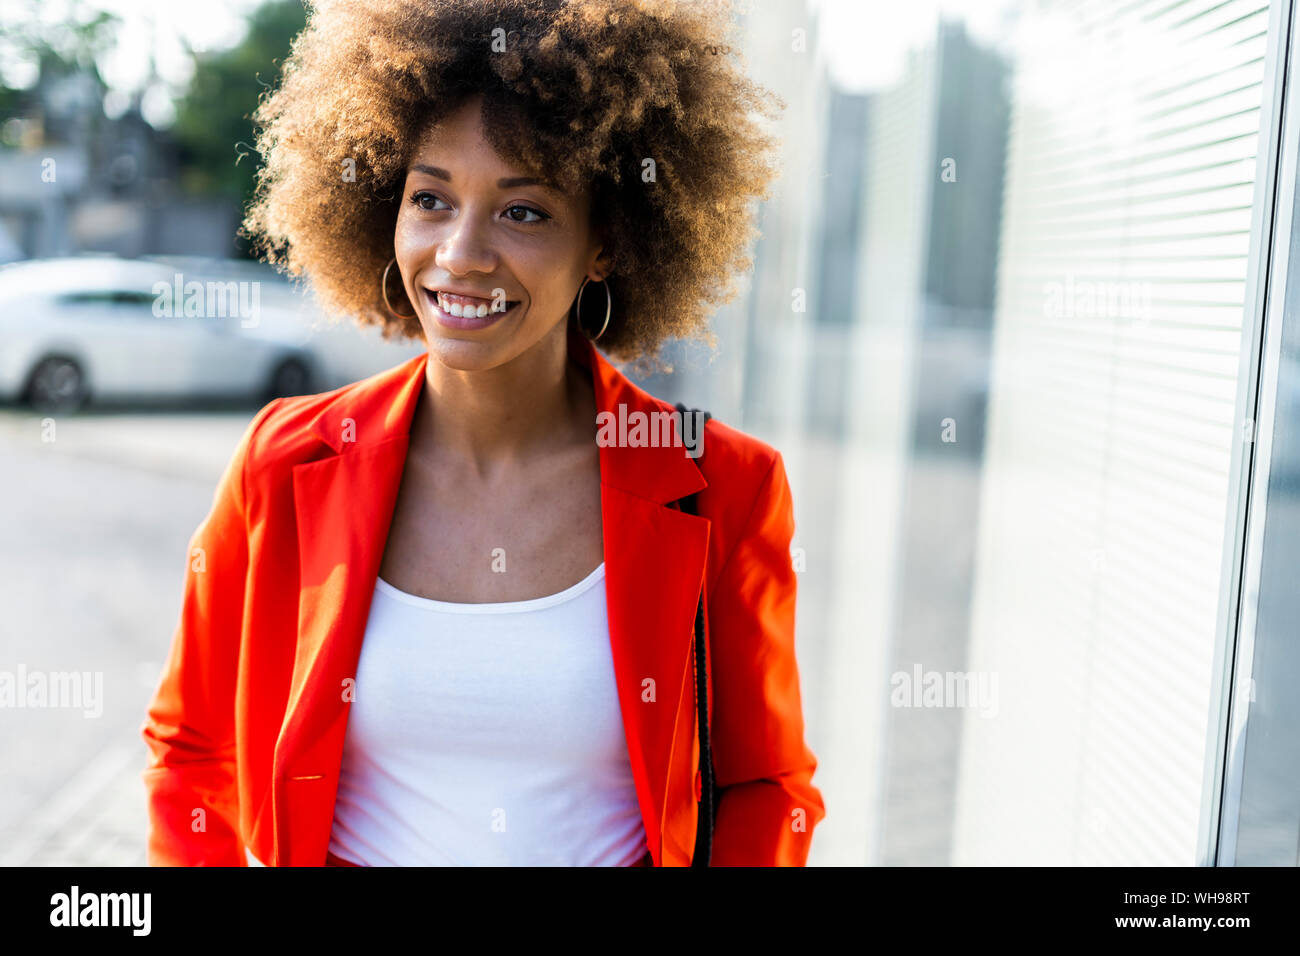 Portrait von lächelnden jungen Frau das Tragen modischer roten Anzug Jacke Stockfoto